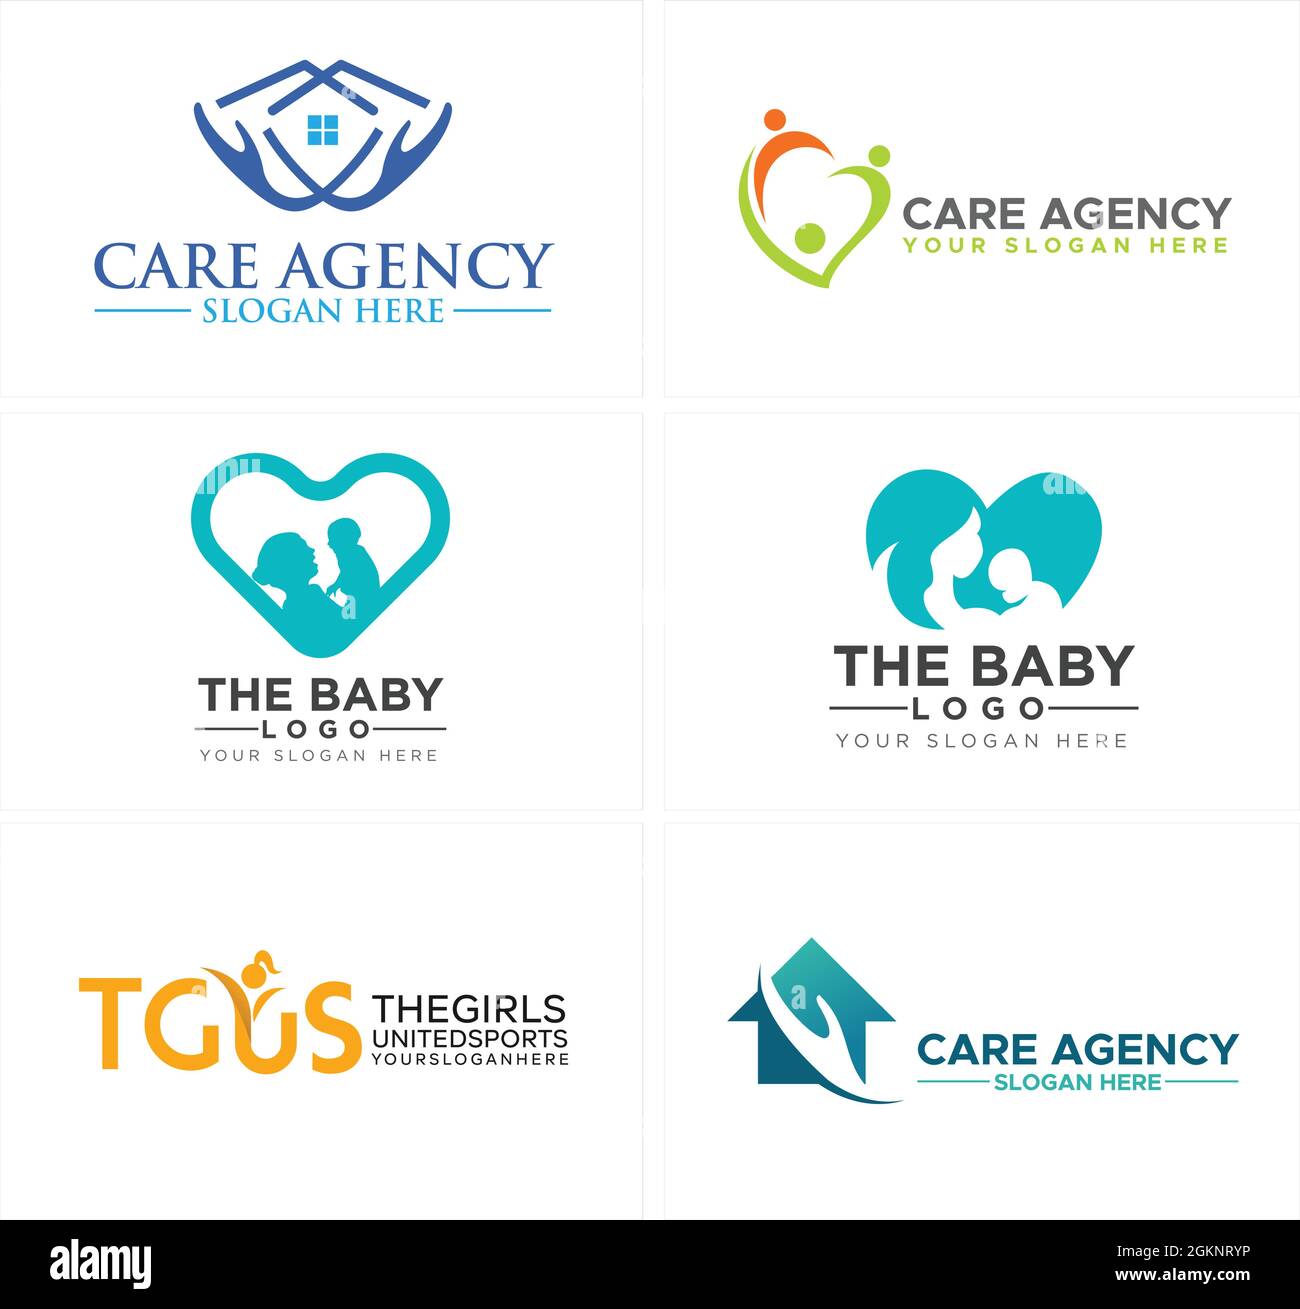 Design du logo de la fondation familiale à but non lucratif de l'agence de soins Illustration de Vecteur